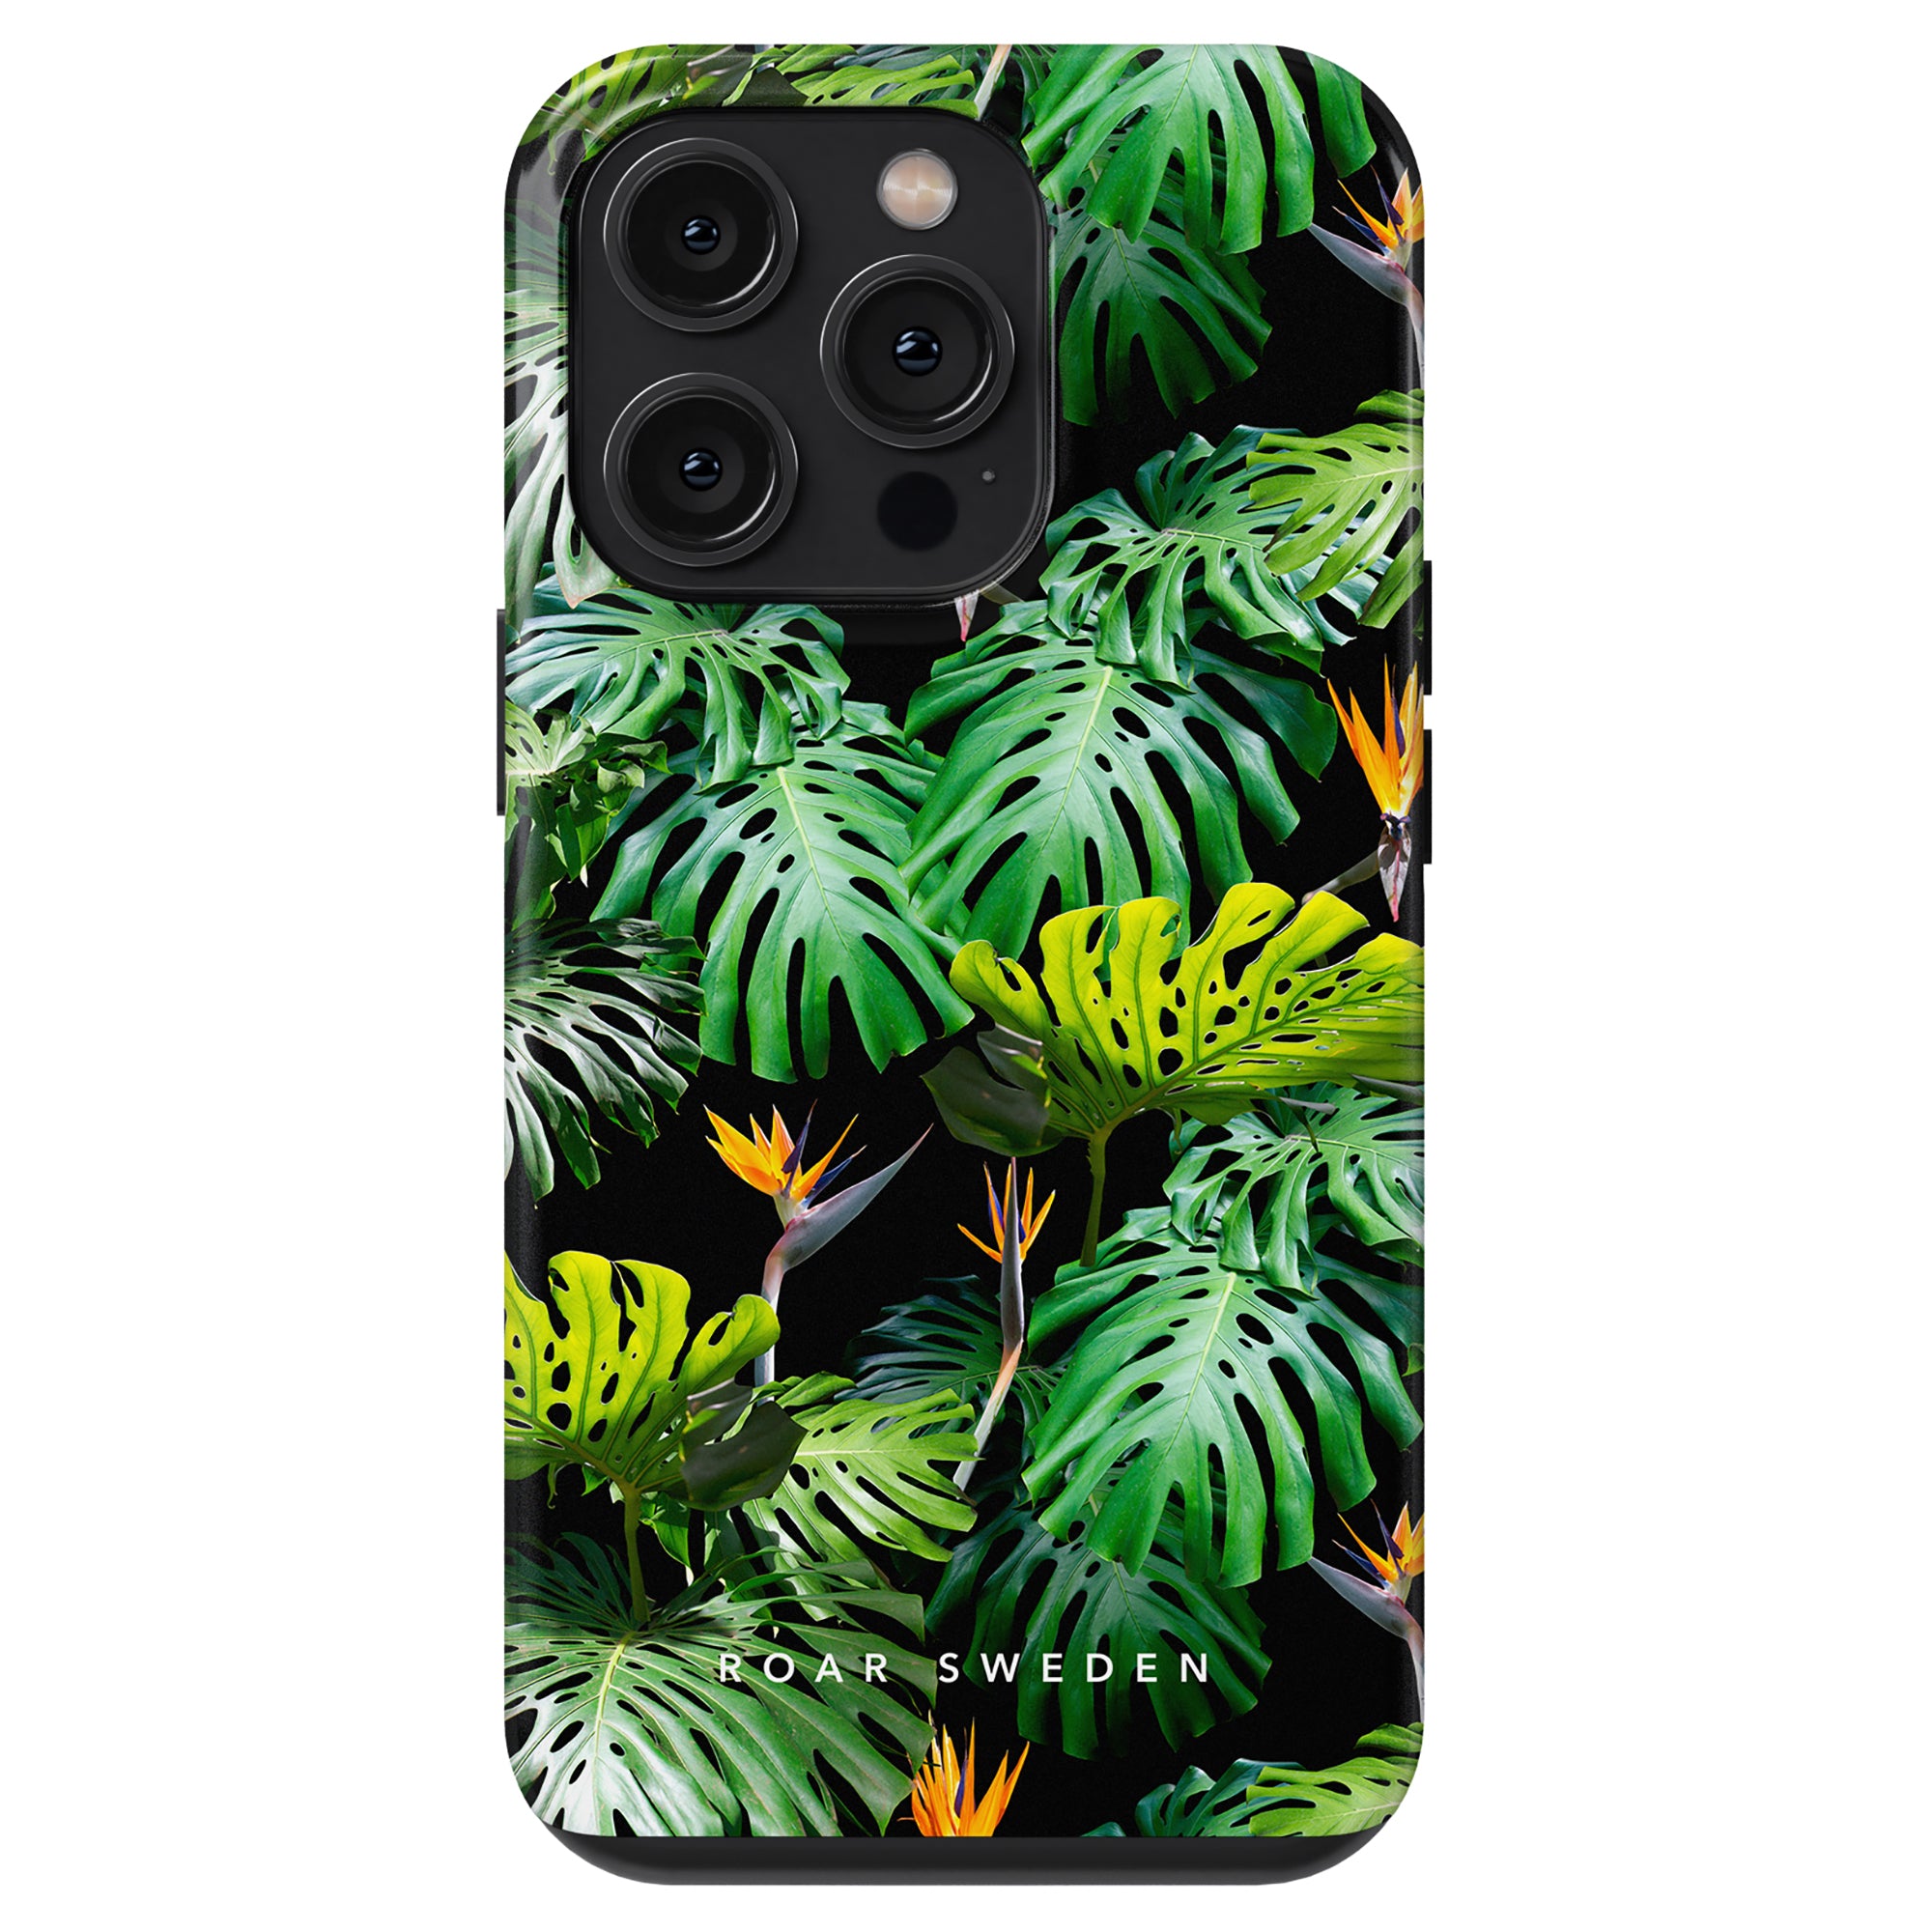 Ett trendigt Hawaii - Tufft fodral med tropiska löv och fåglar som ger din enhet en touch av naturinspirerad charm.